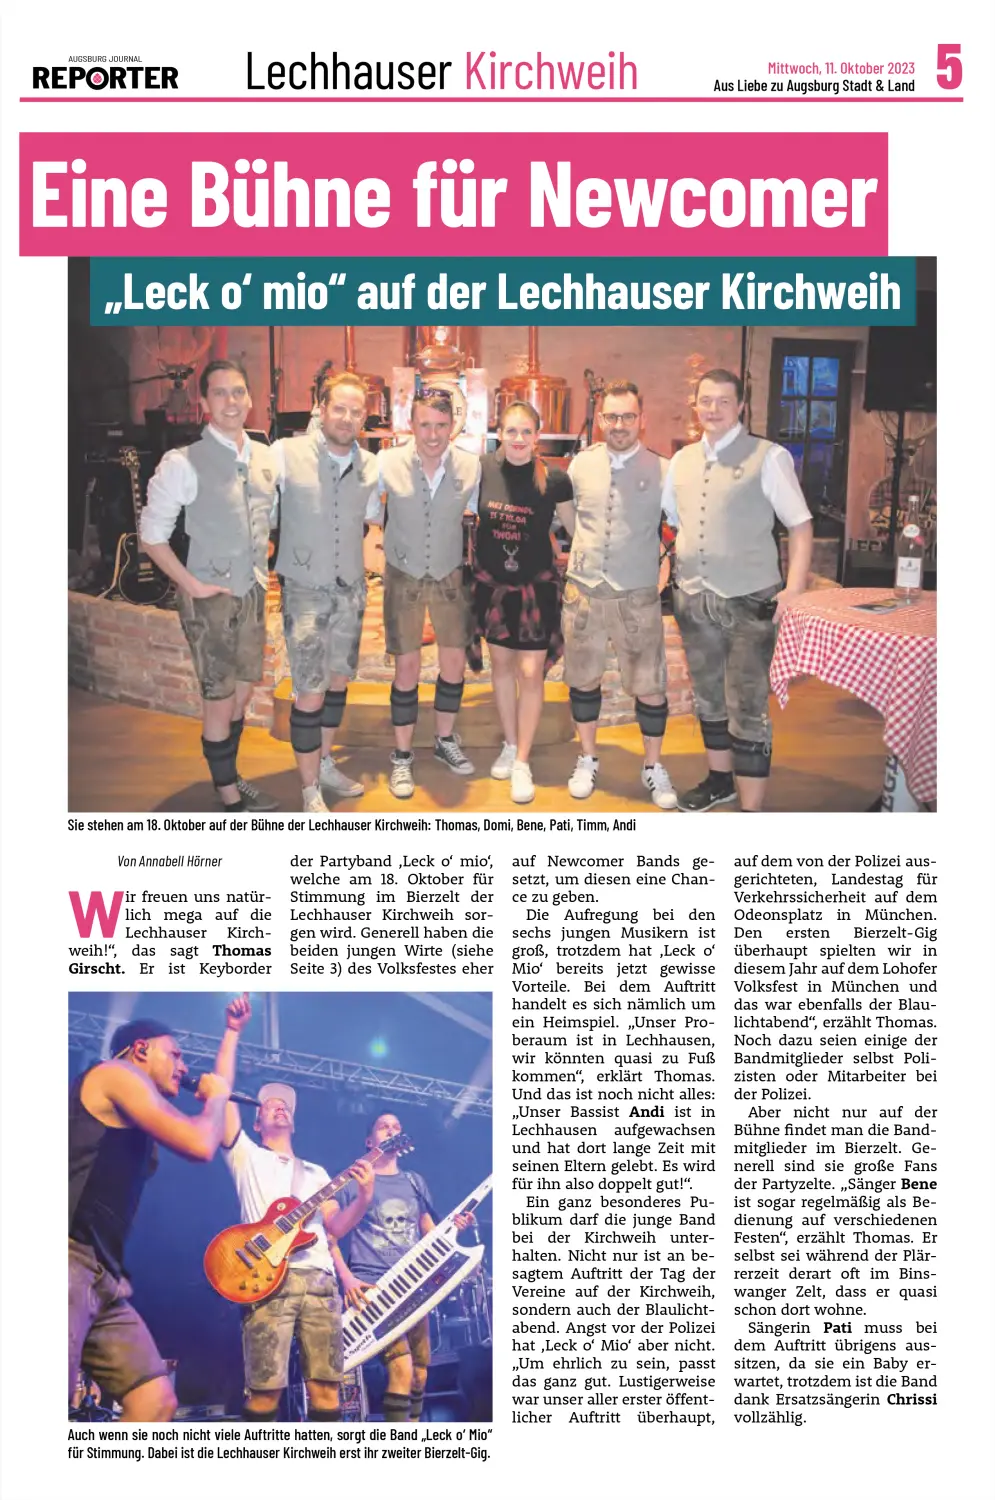 leck o mio, Moderne Partyband, Bayerische Band, Junge Partyband, Festzeltband - Zeitungsartikel